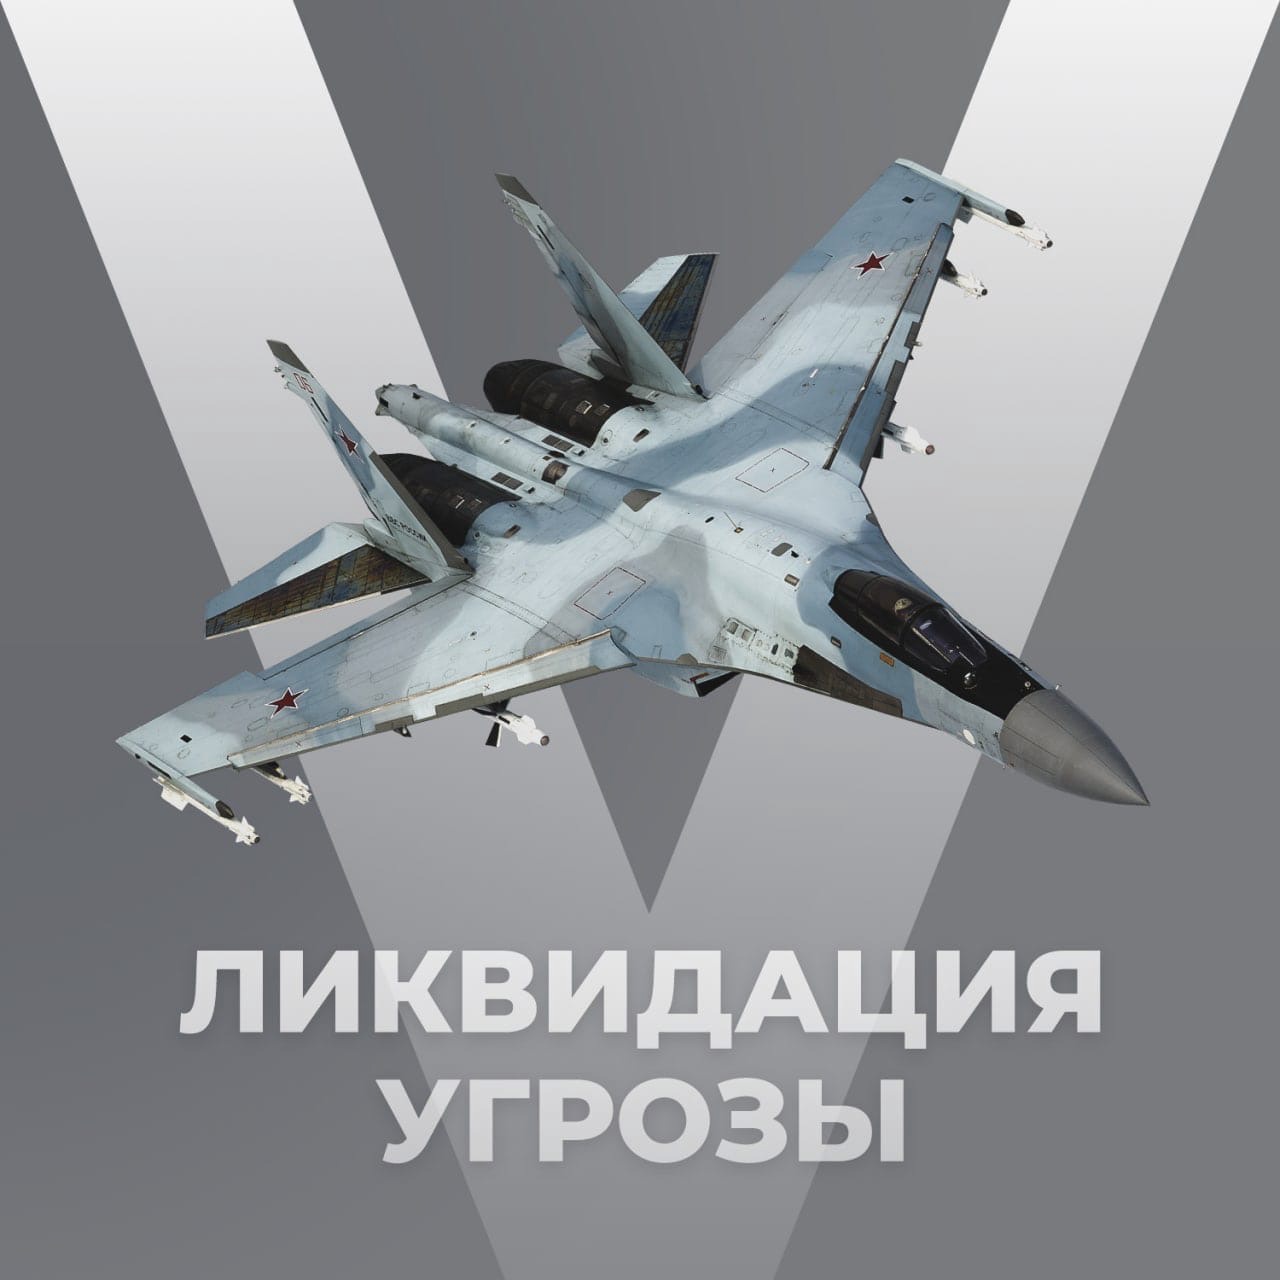 Российские военные сбили украинские самолеты МиГ-29 и Ан-26